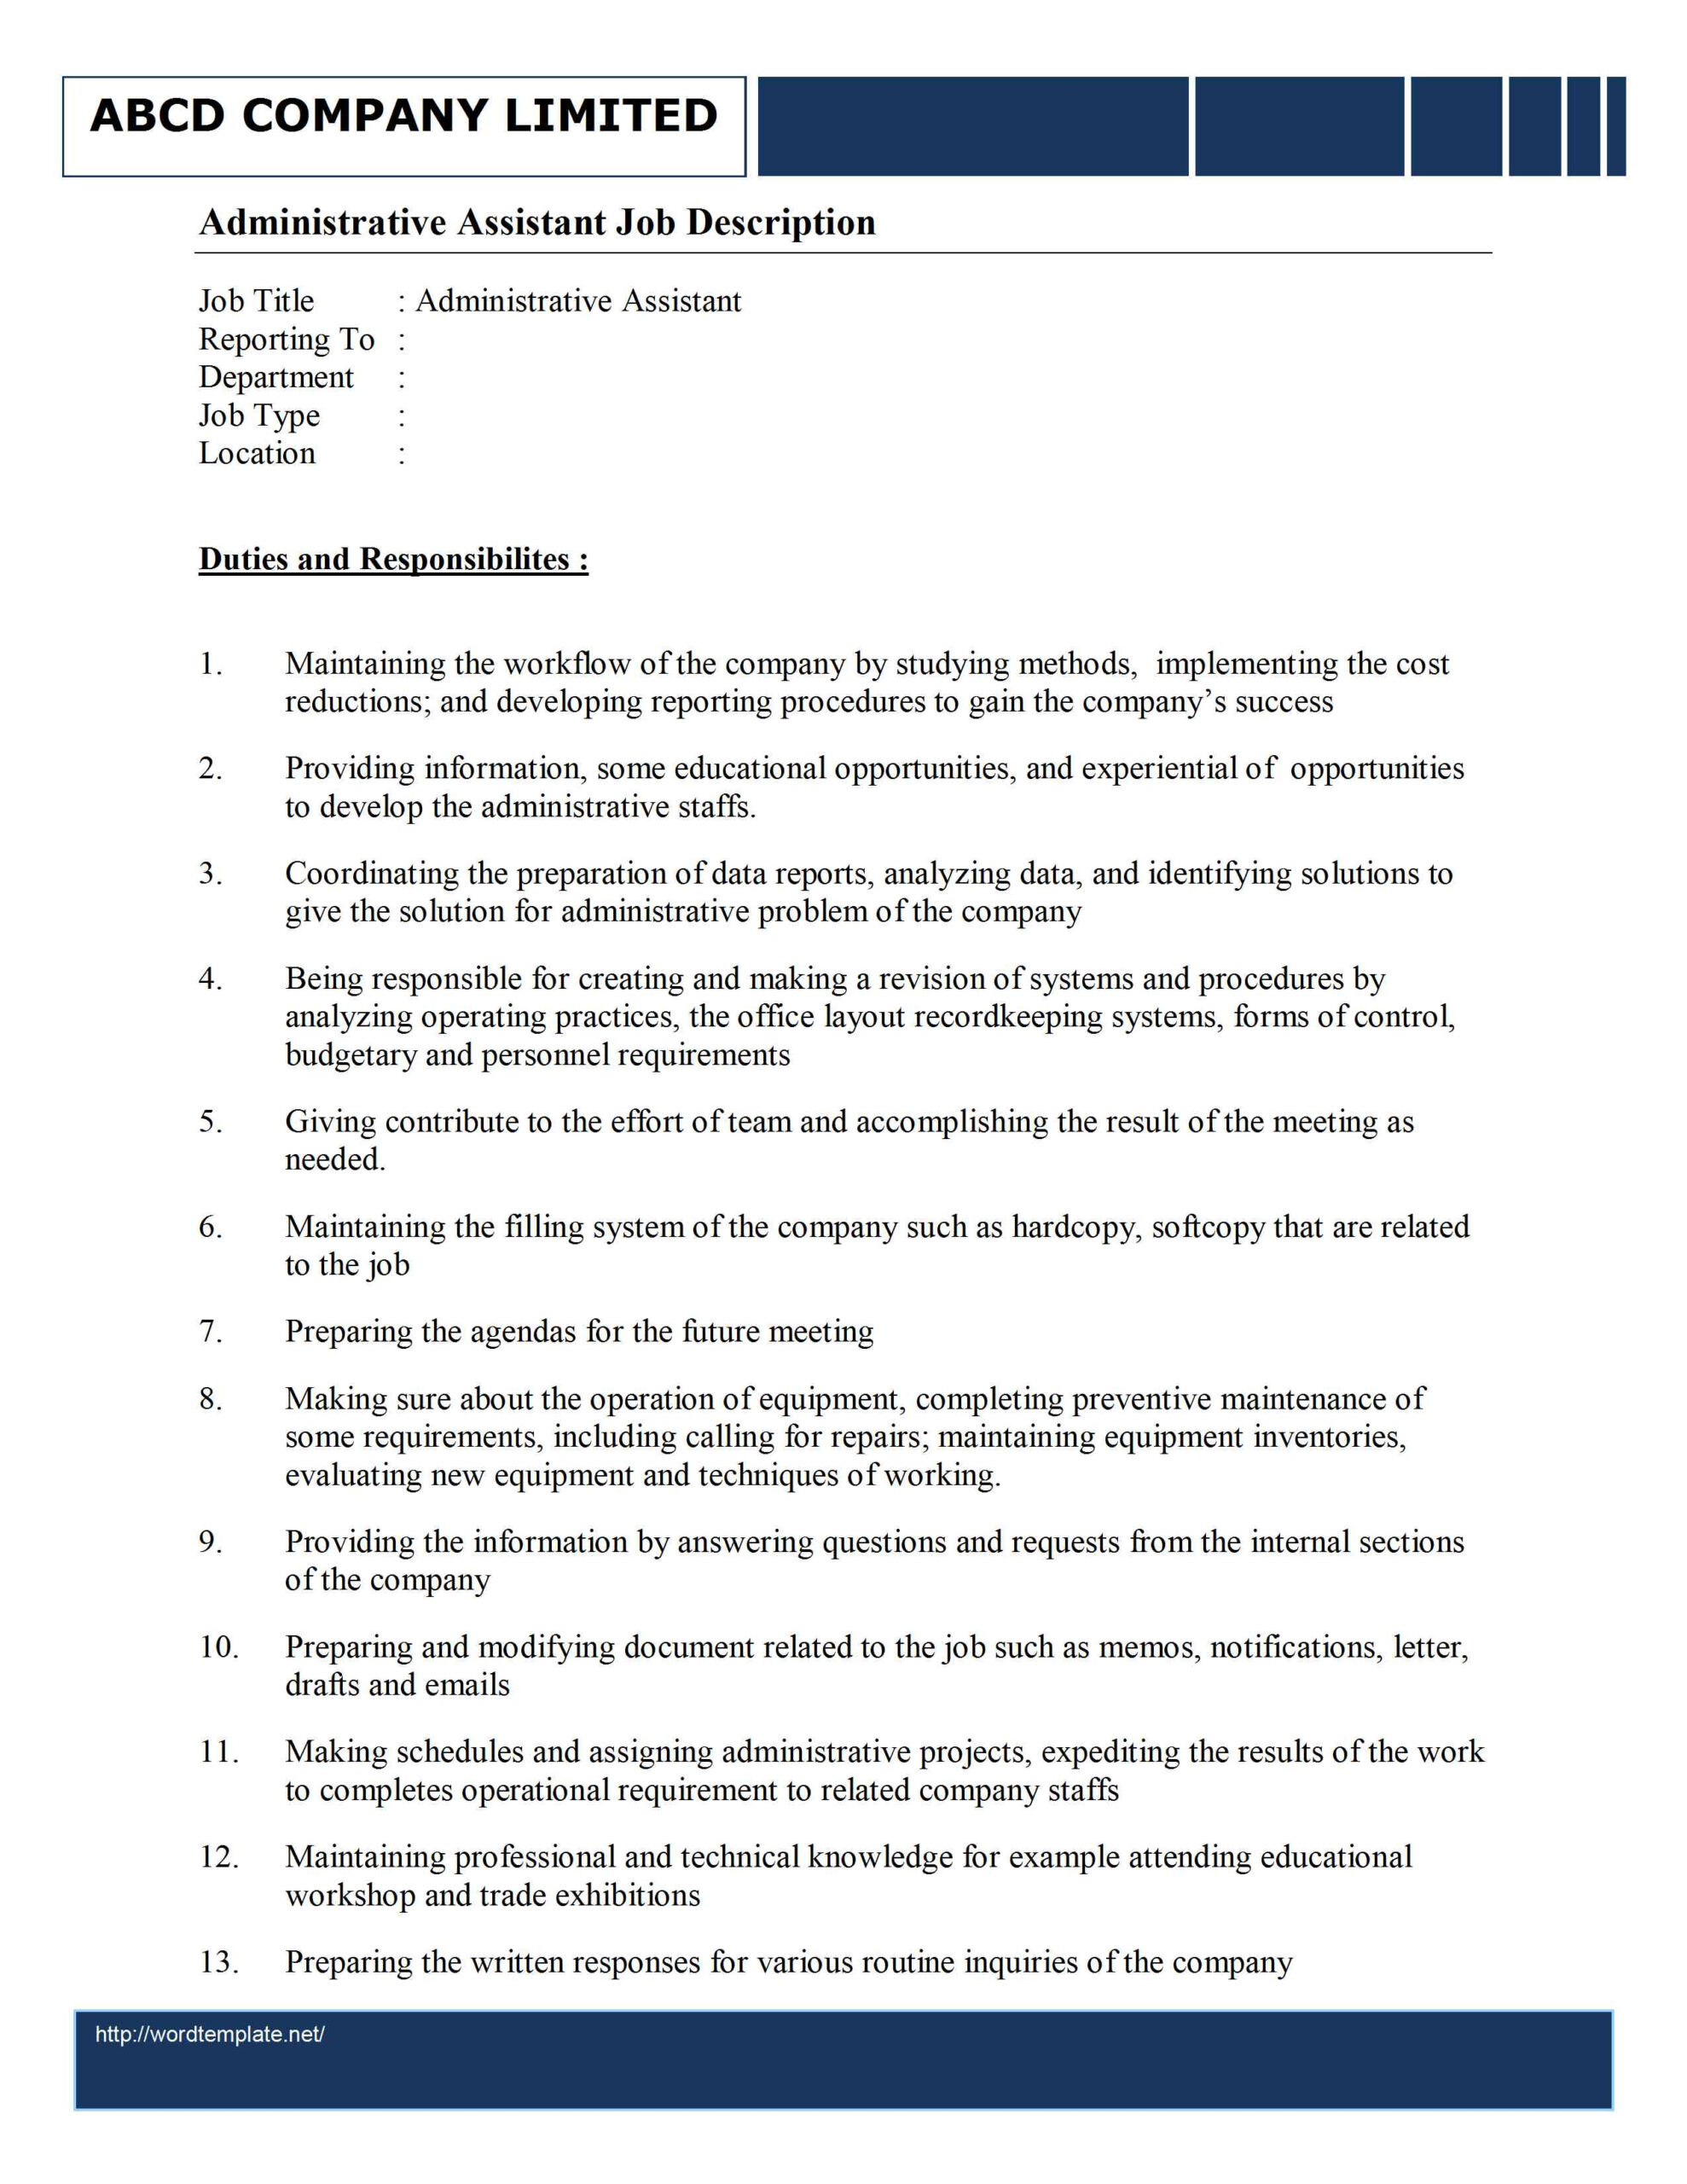 Administrative Assistant Job Description Template Within Executive Assistant Job Description Template